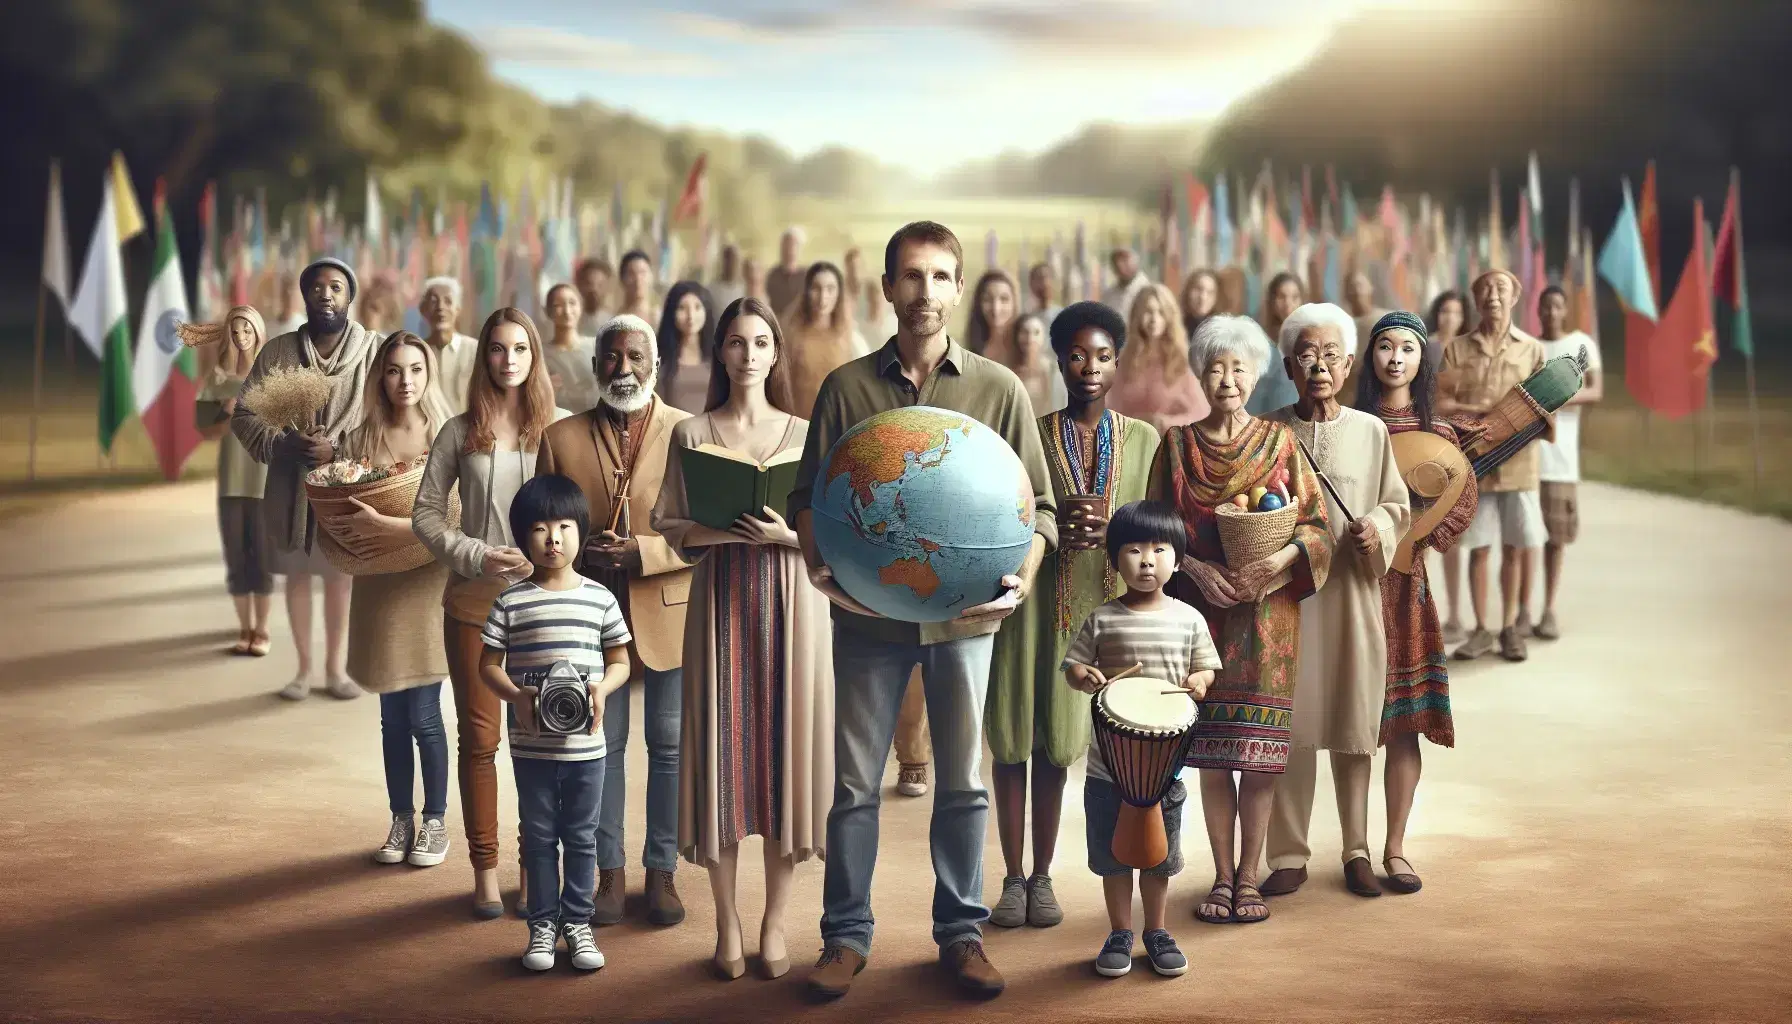 Grupo diverso de personas con objetos culturales, hombre con globo terráqueo, niño con tambor y mujer con libro en parque natural.